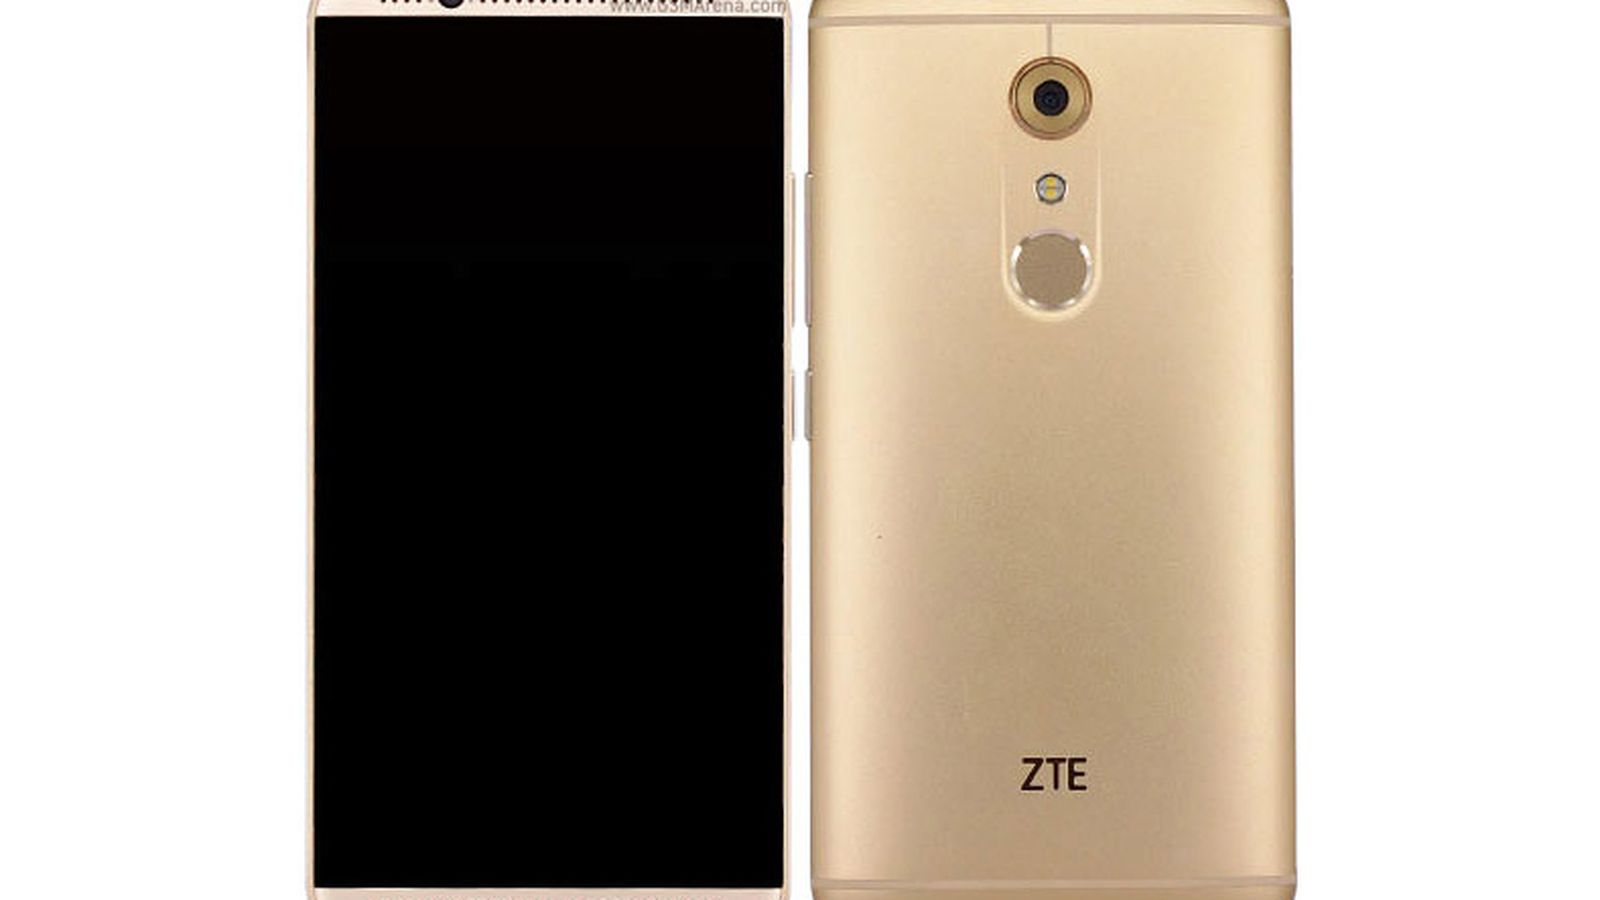 الهاتف الجديد لشركة زت ZTE Axon 7